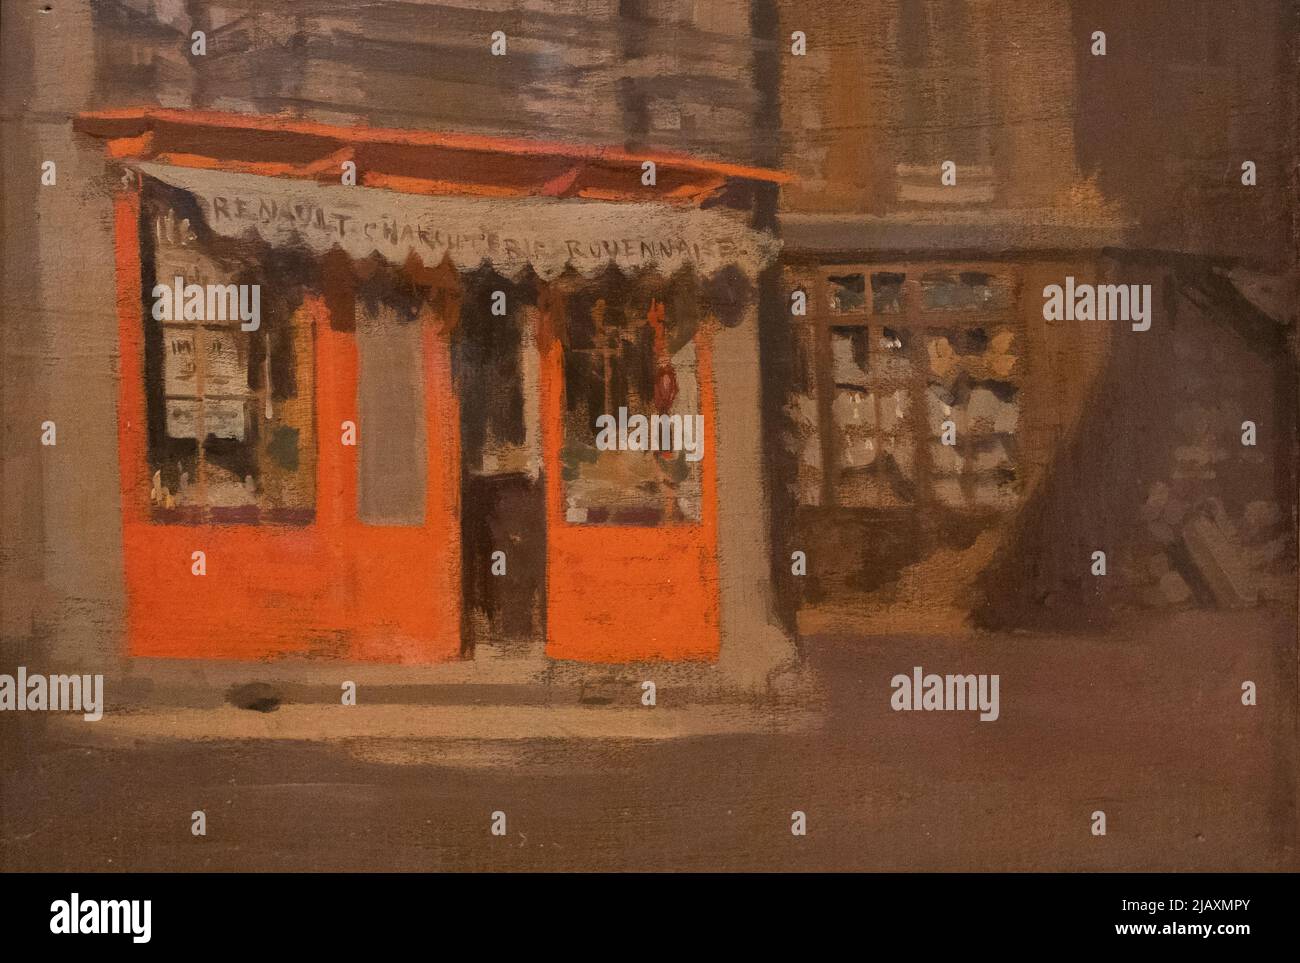 Walter Sickert peinture; ' The Red Shop ', huile sur toile 1888, également connu sous le nom de ' The October Sun '. Exemple d'art impressionniste de la poste britannique Banque D'Images